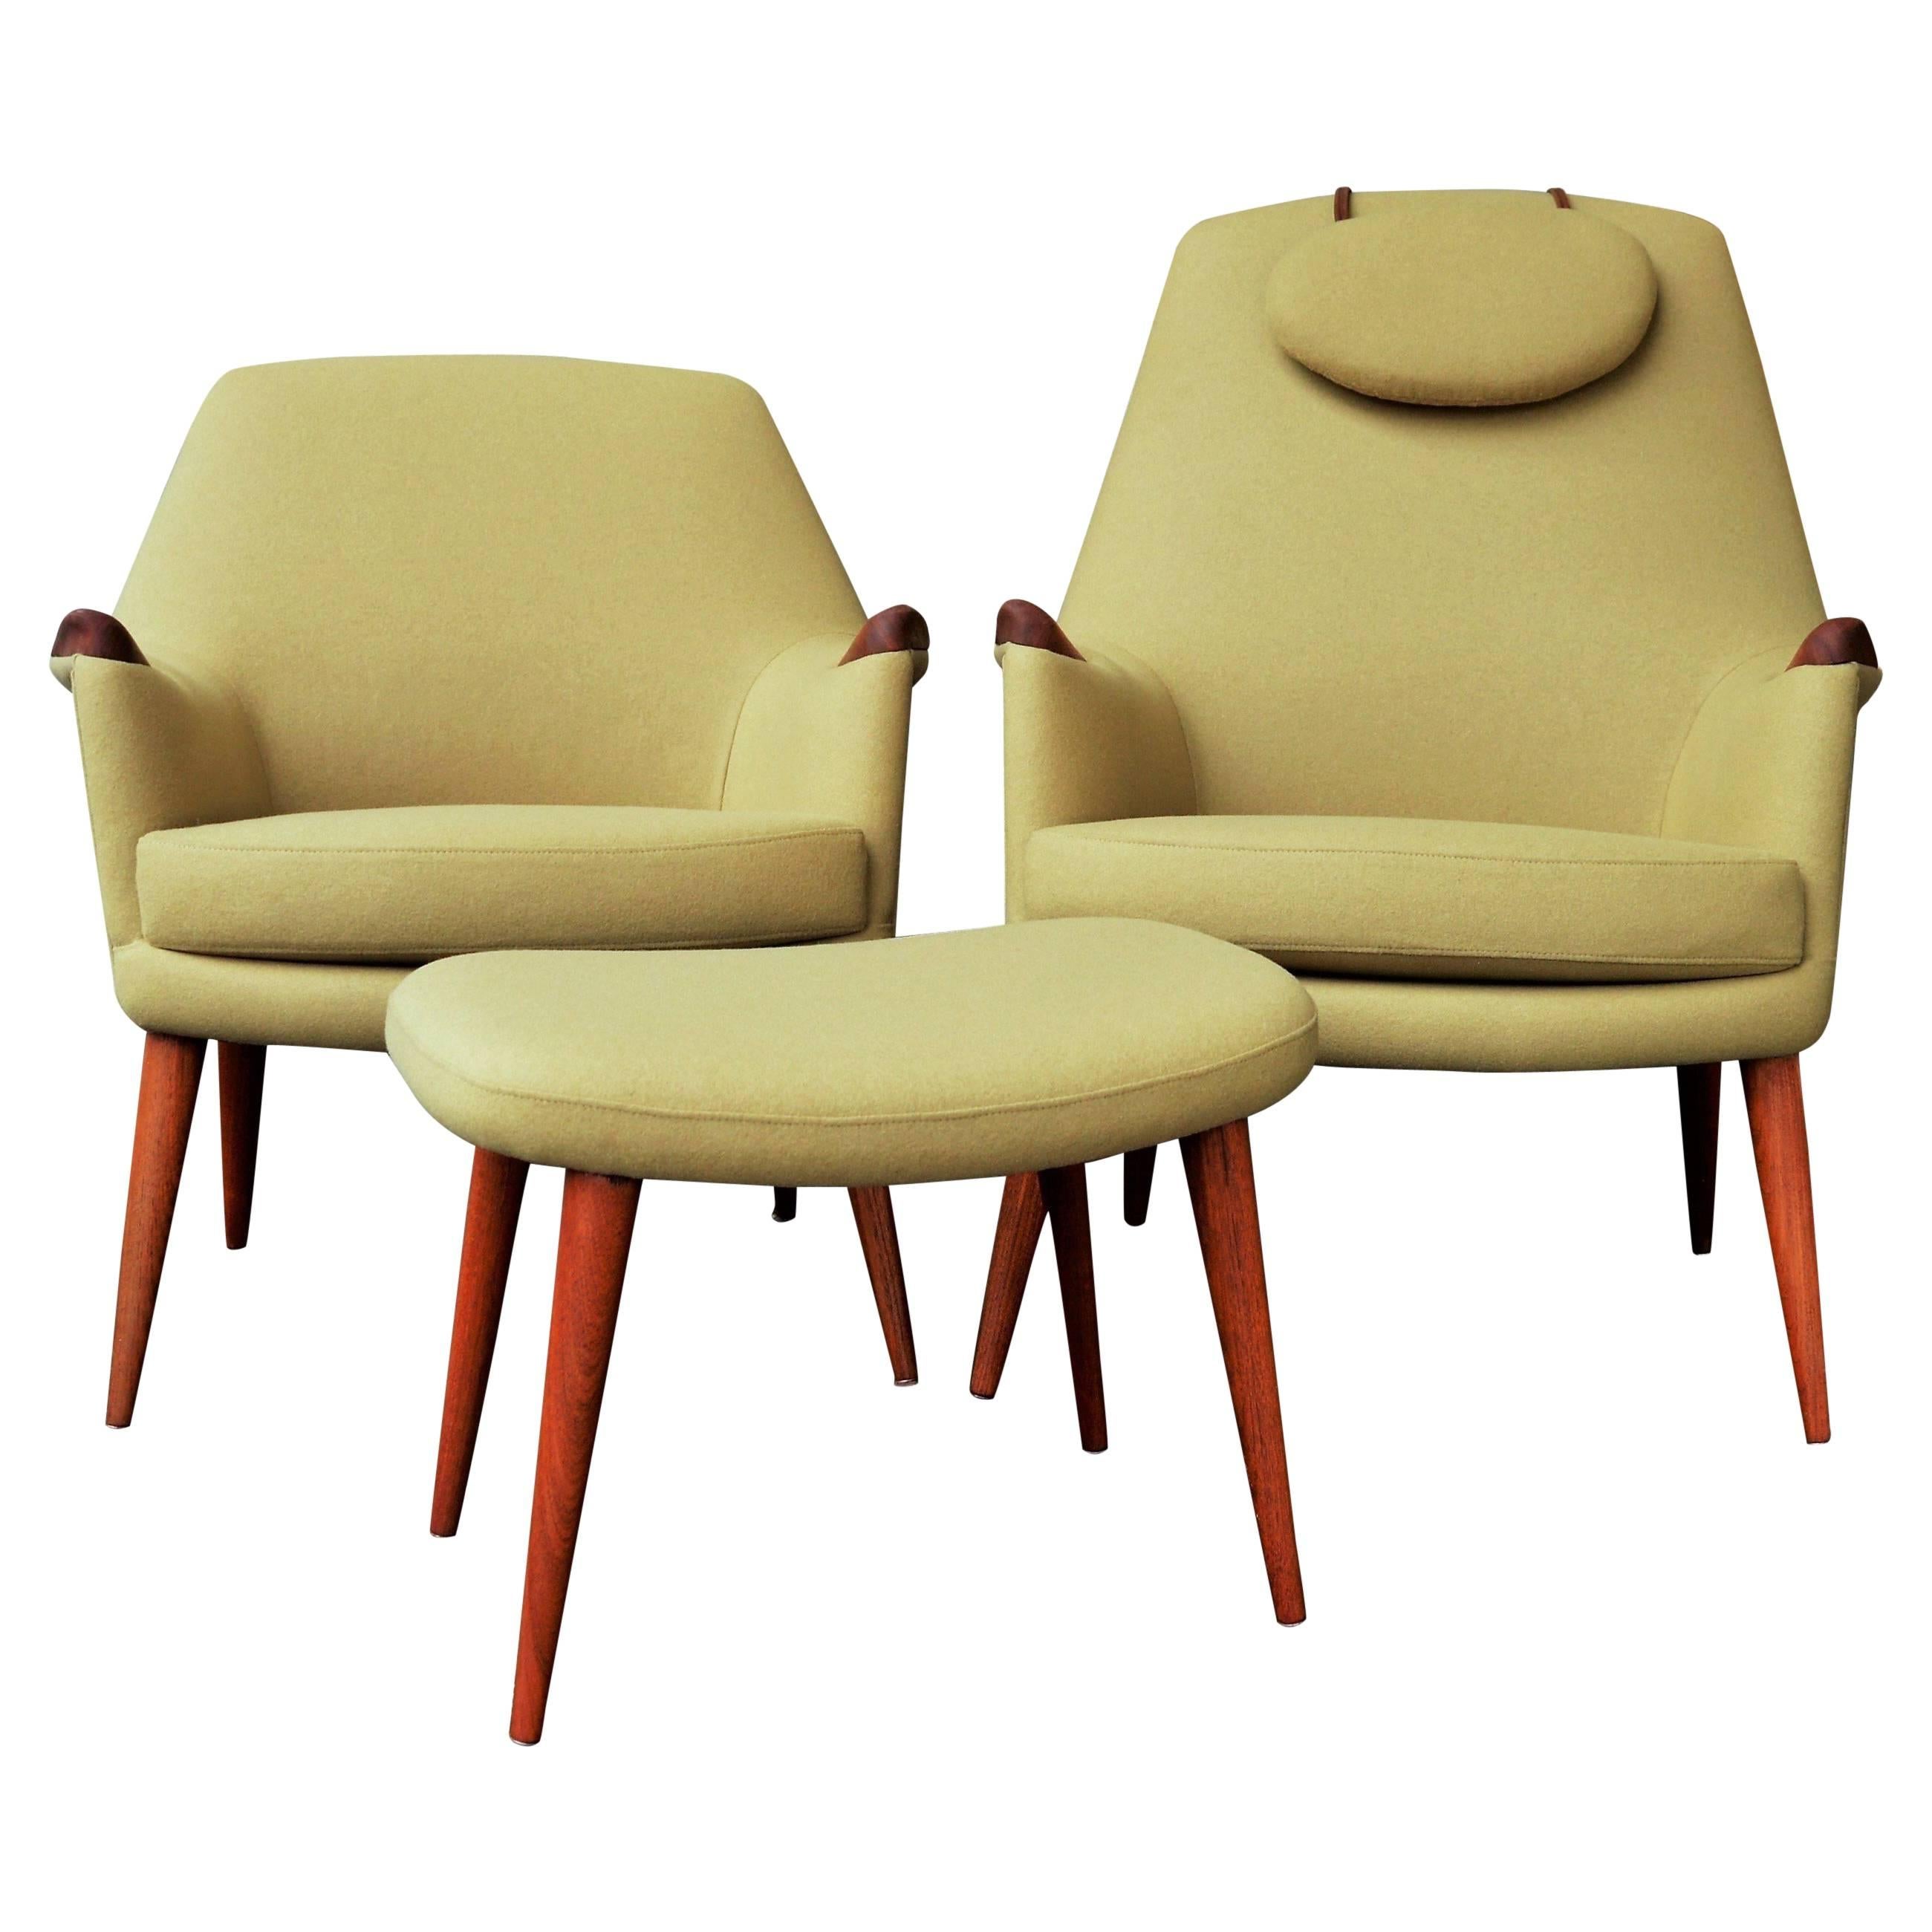 Pair of Ingmar Relling for Westnofa Teak Lounge Chairs, Mama/Papa in Camel Wool